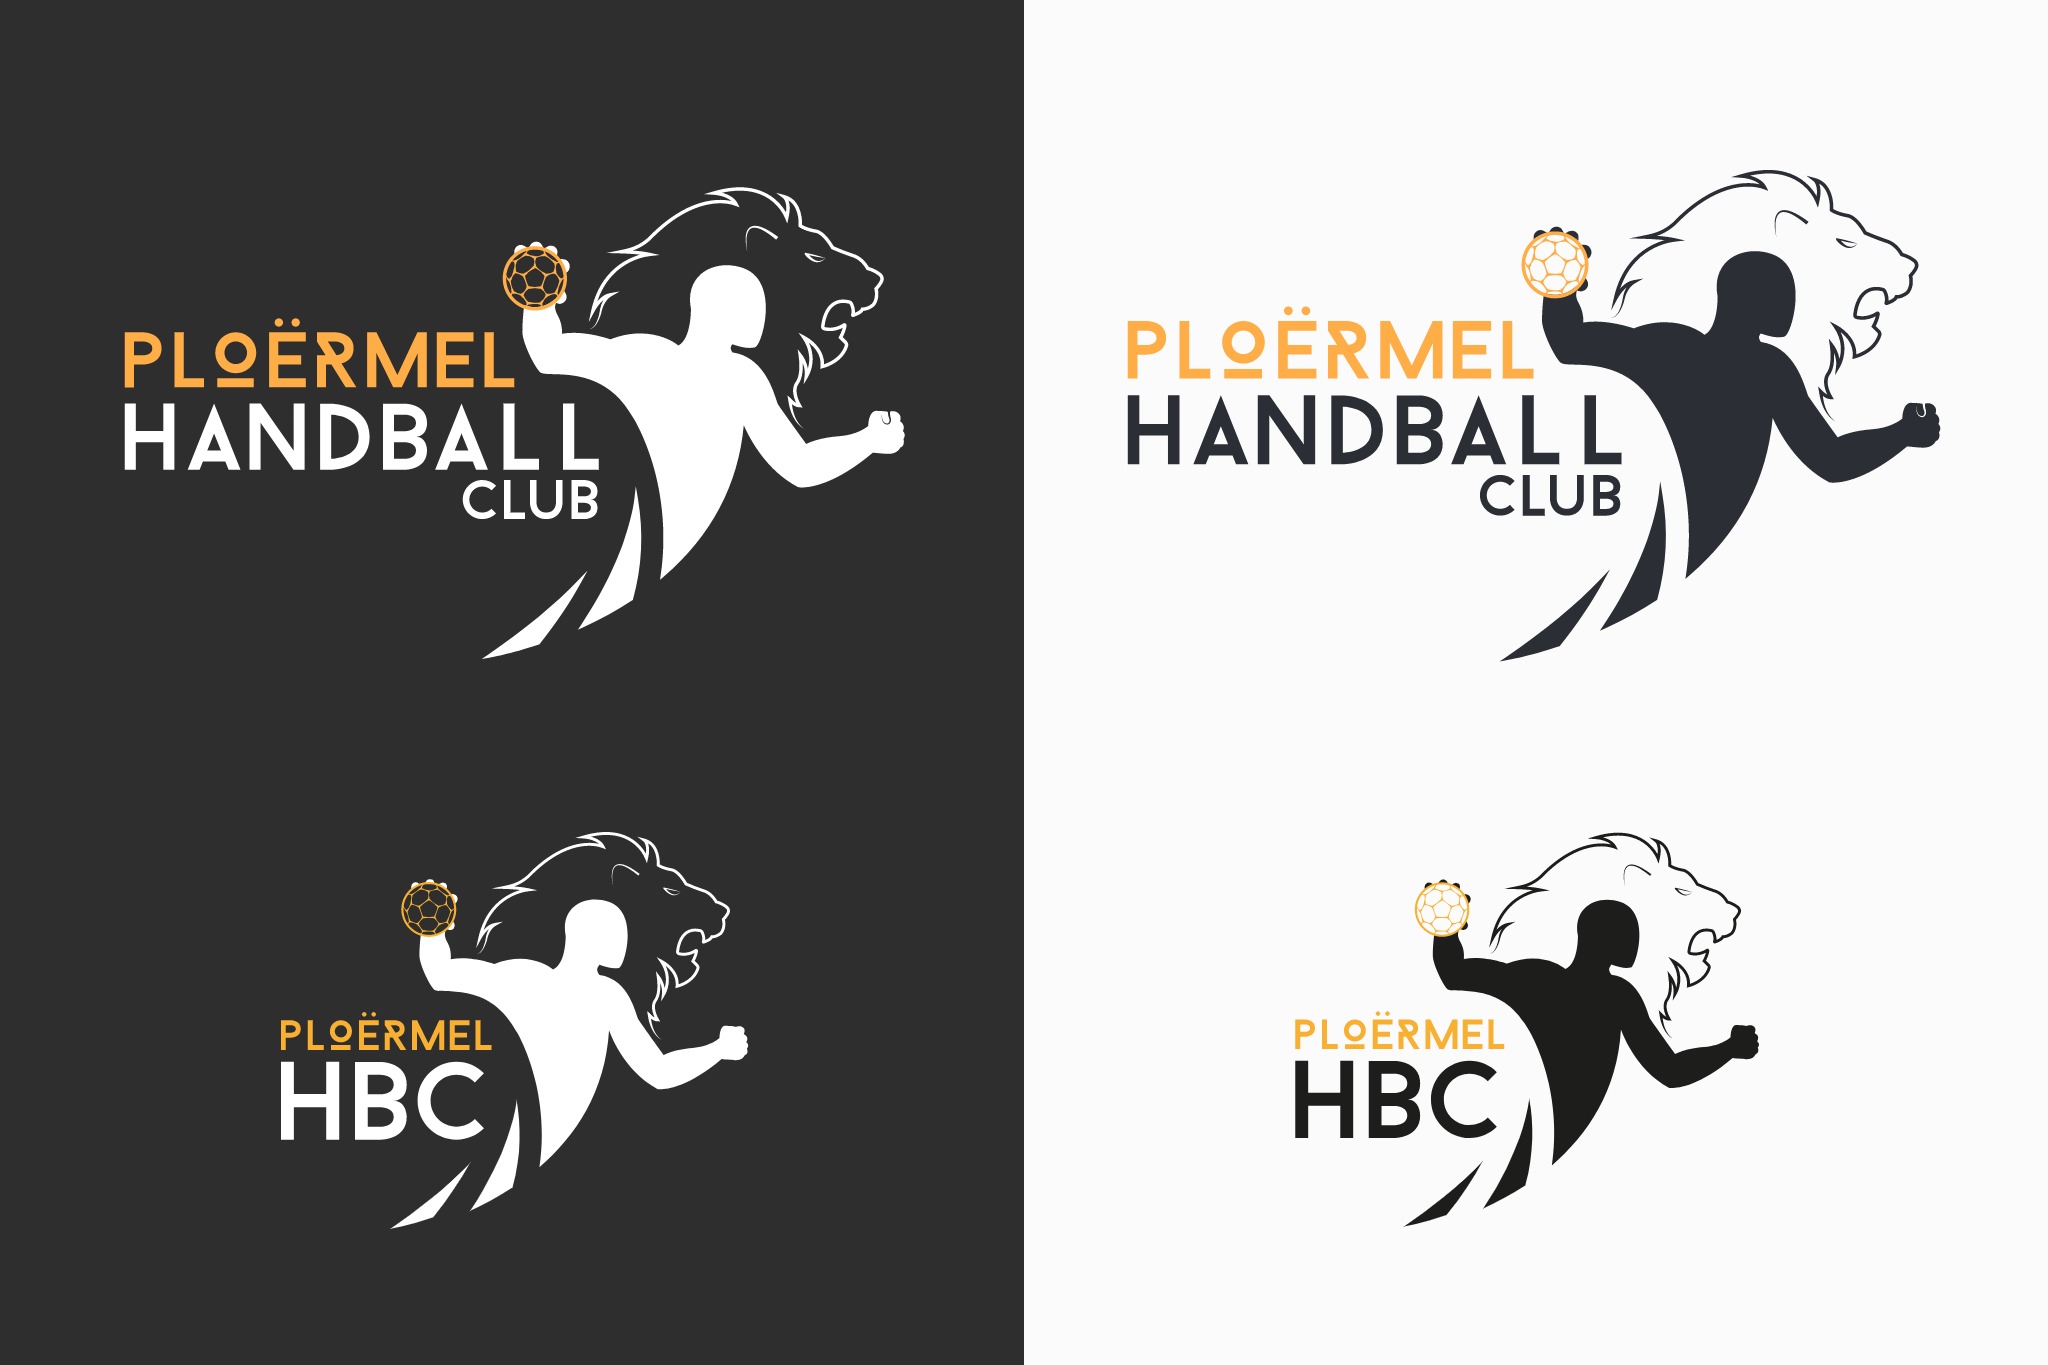 Le nouveau logo 2019 du PHC